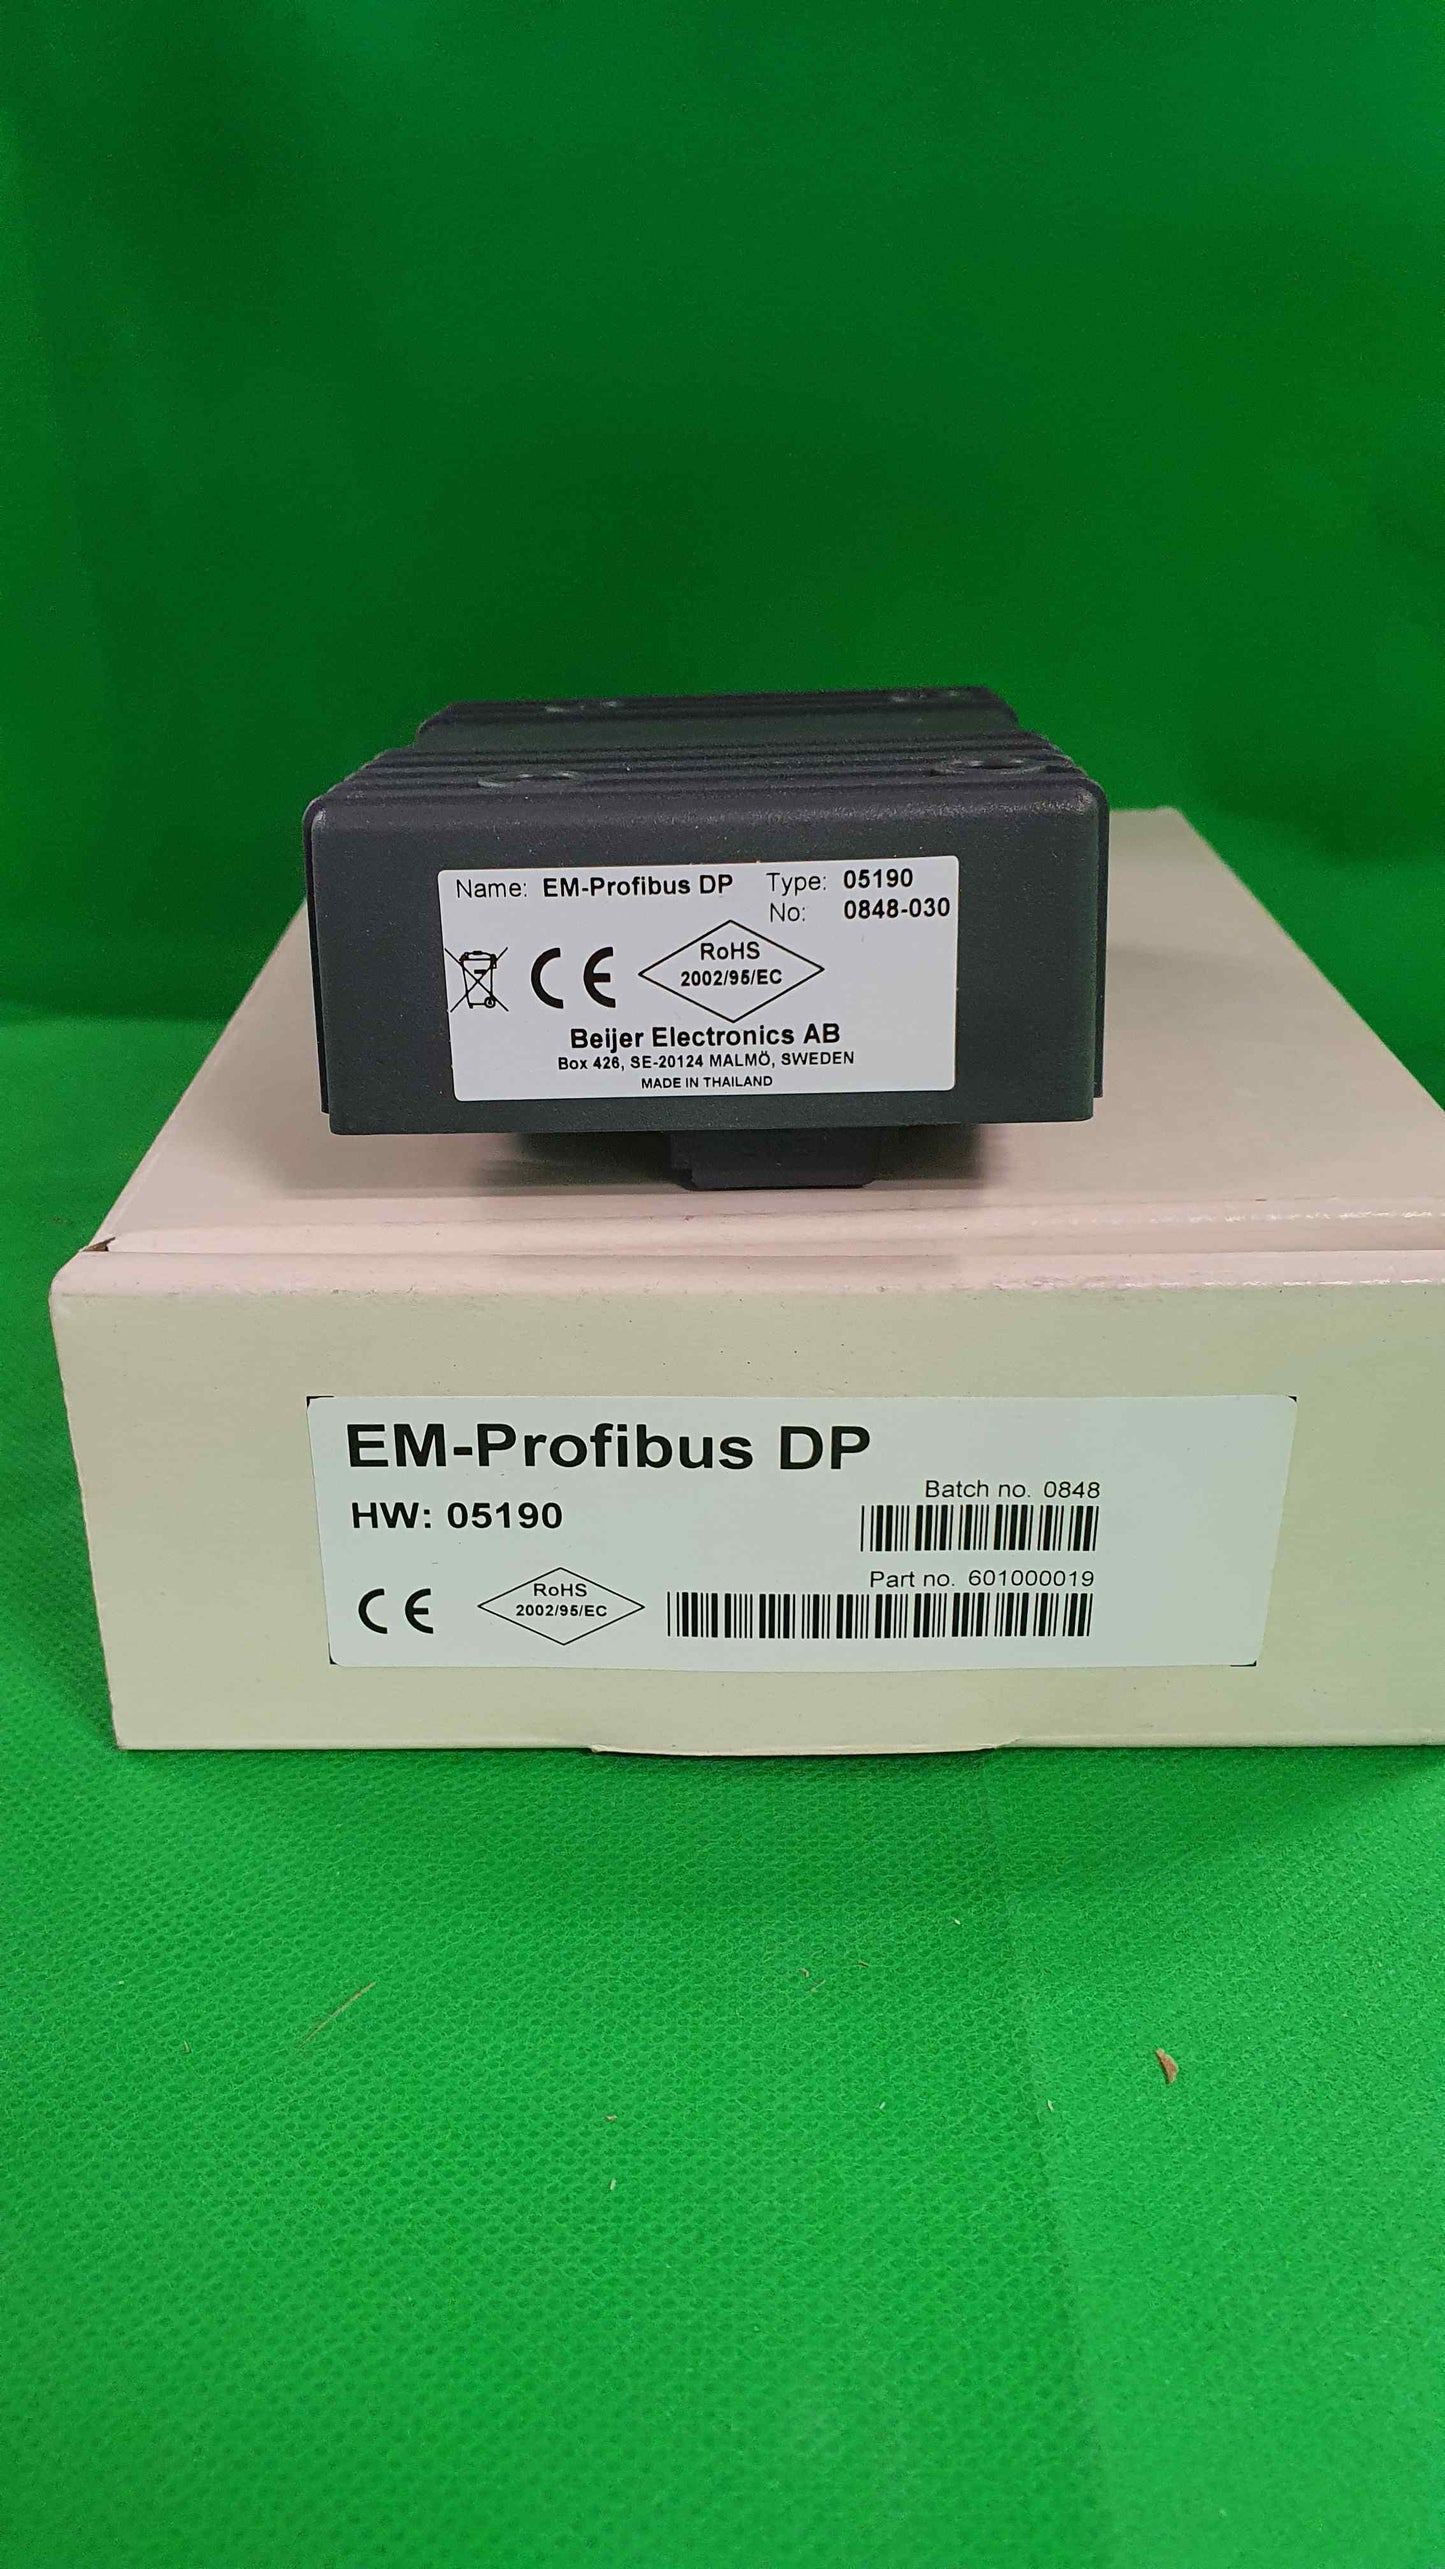 Beijer ELECTRONIC AB-EM-Profibus DP/EMProfibusDP